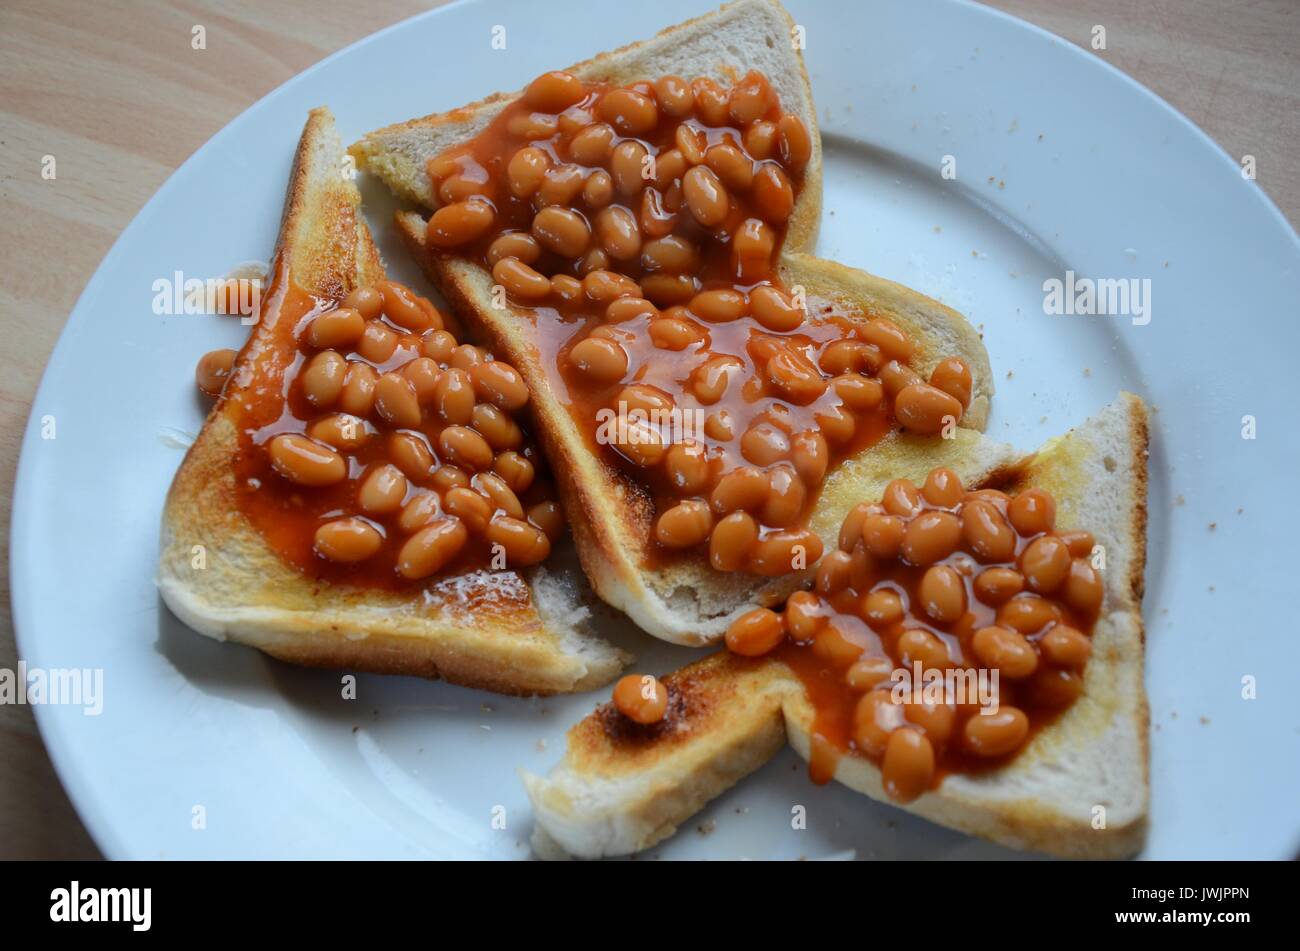 beans on toast Stock Photo